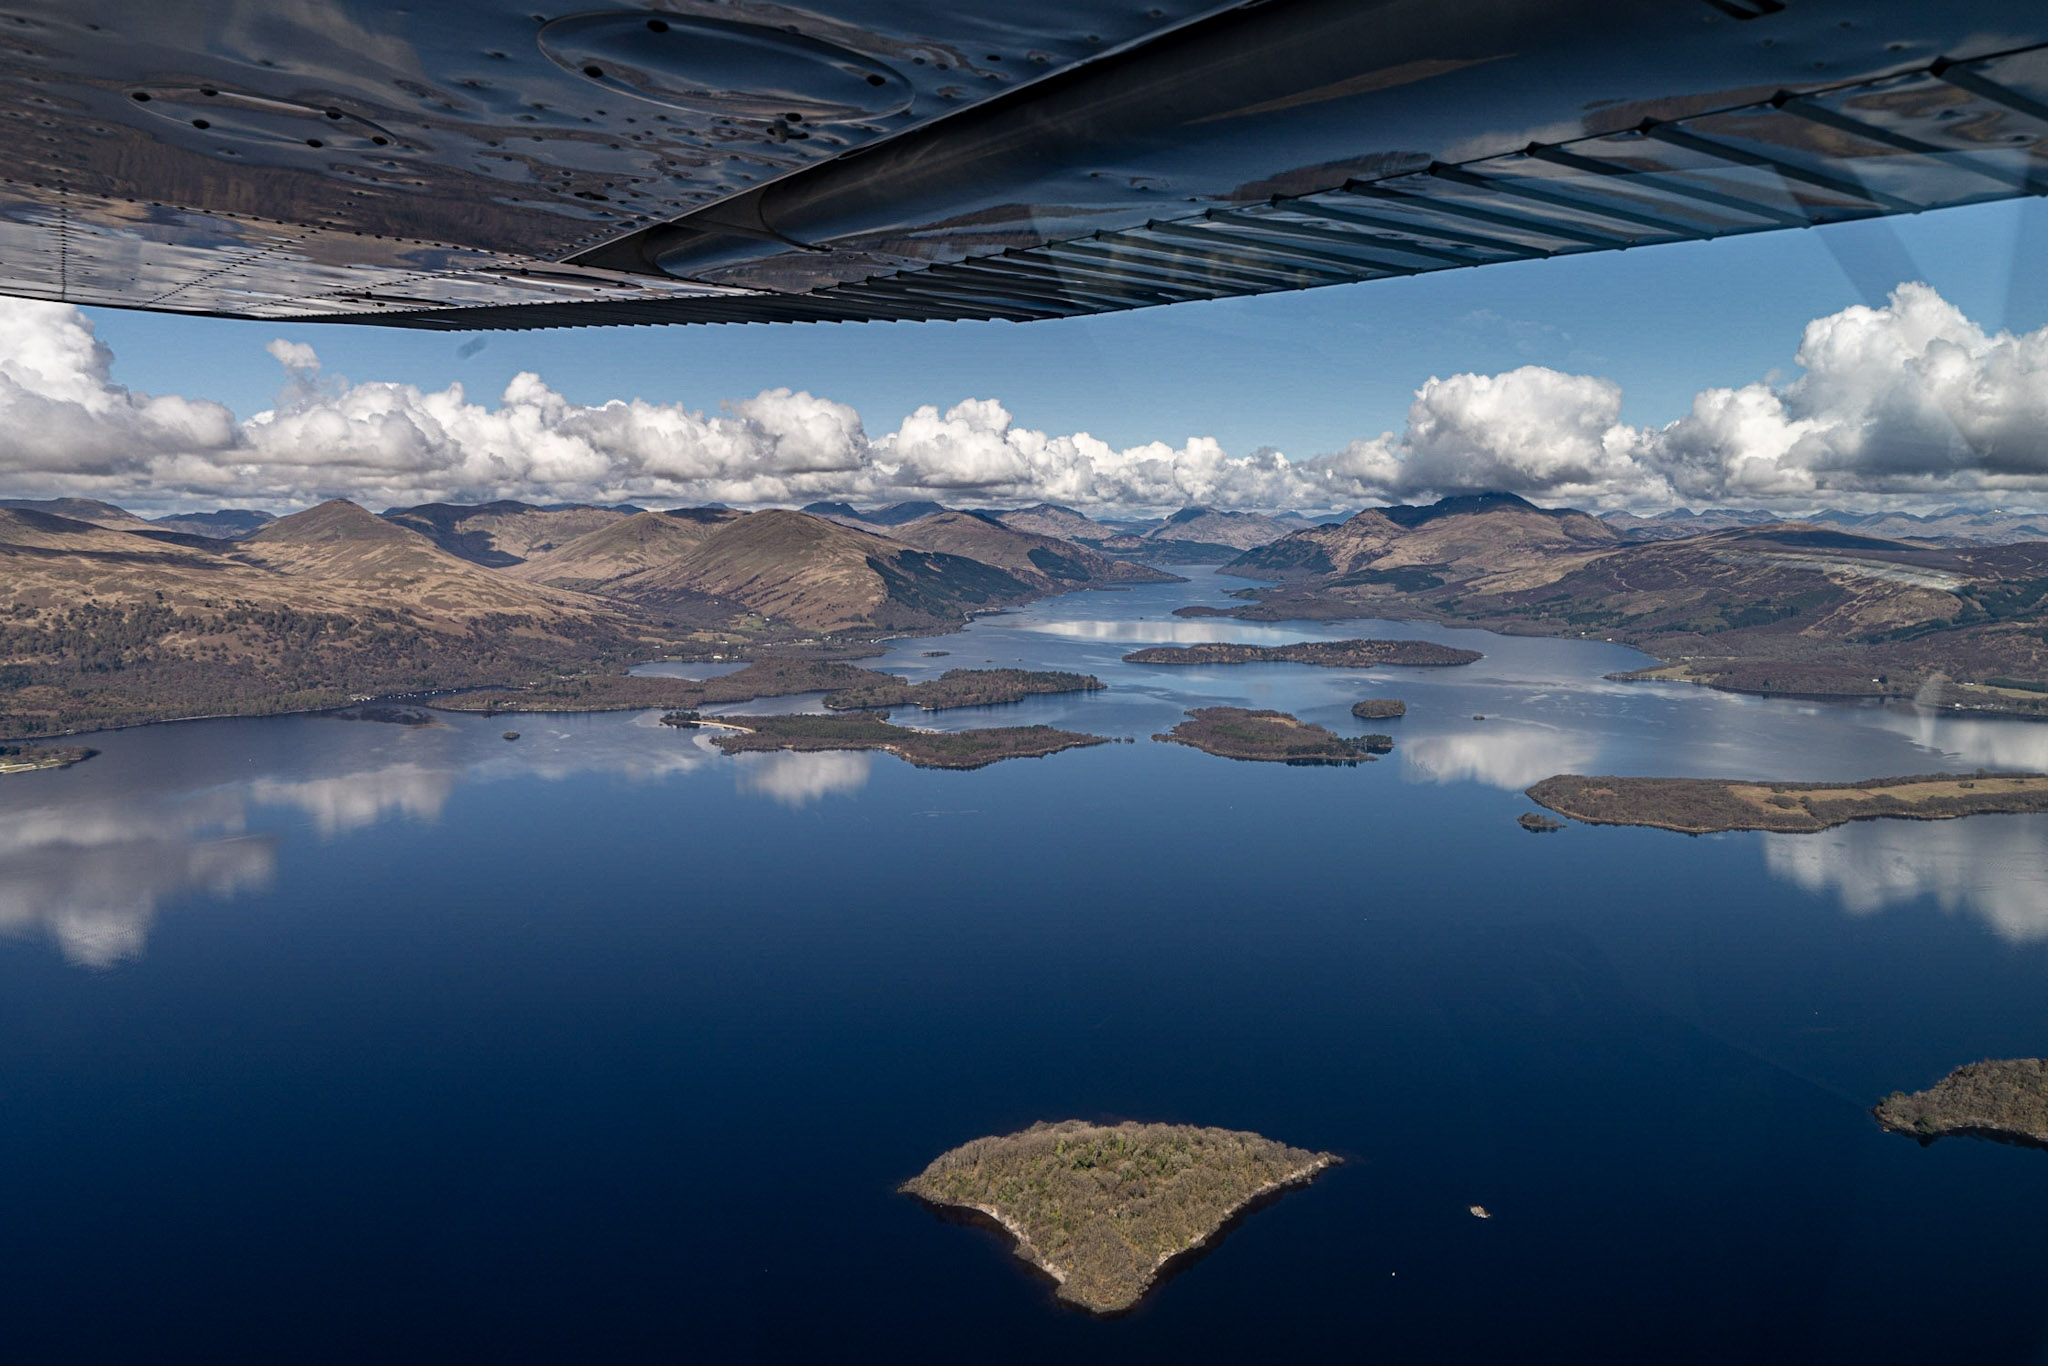 Flying over Loch Lomond in Scotland